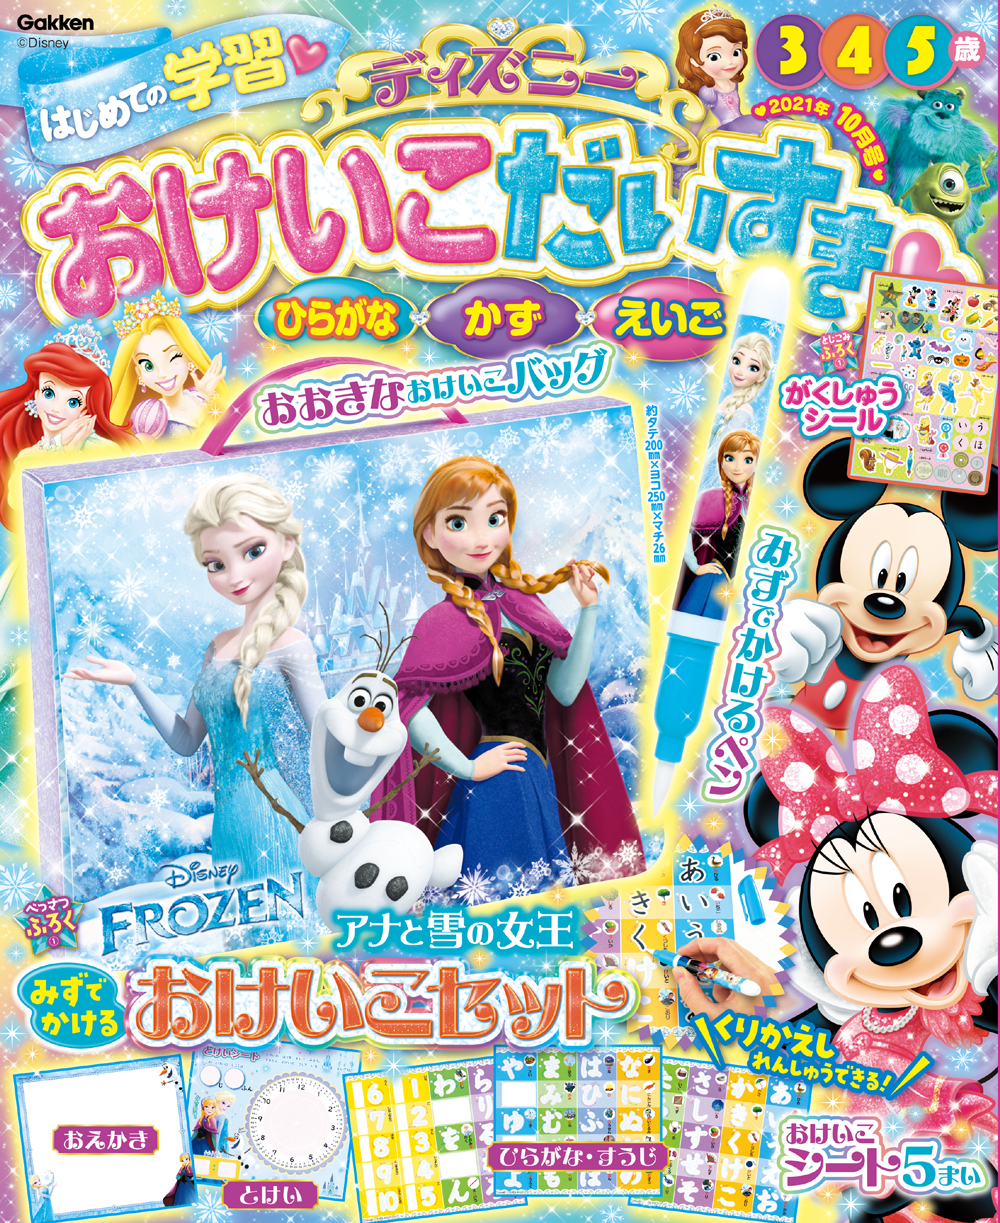 ディズニー学習雑誌『ディズニー おけいこだいすき2021年10月号』が新